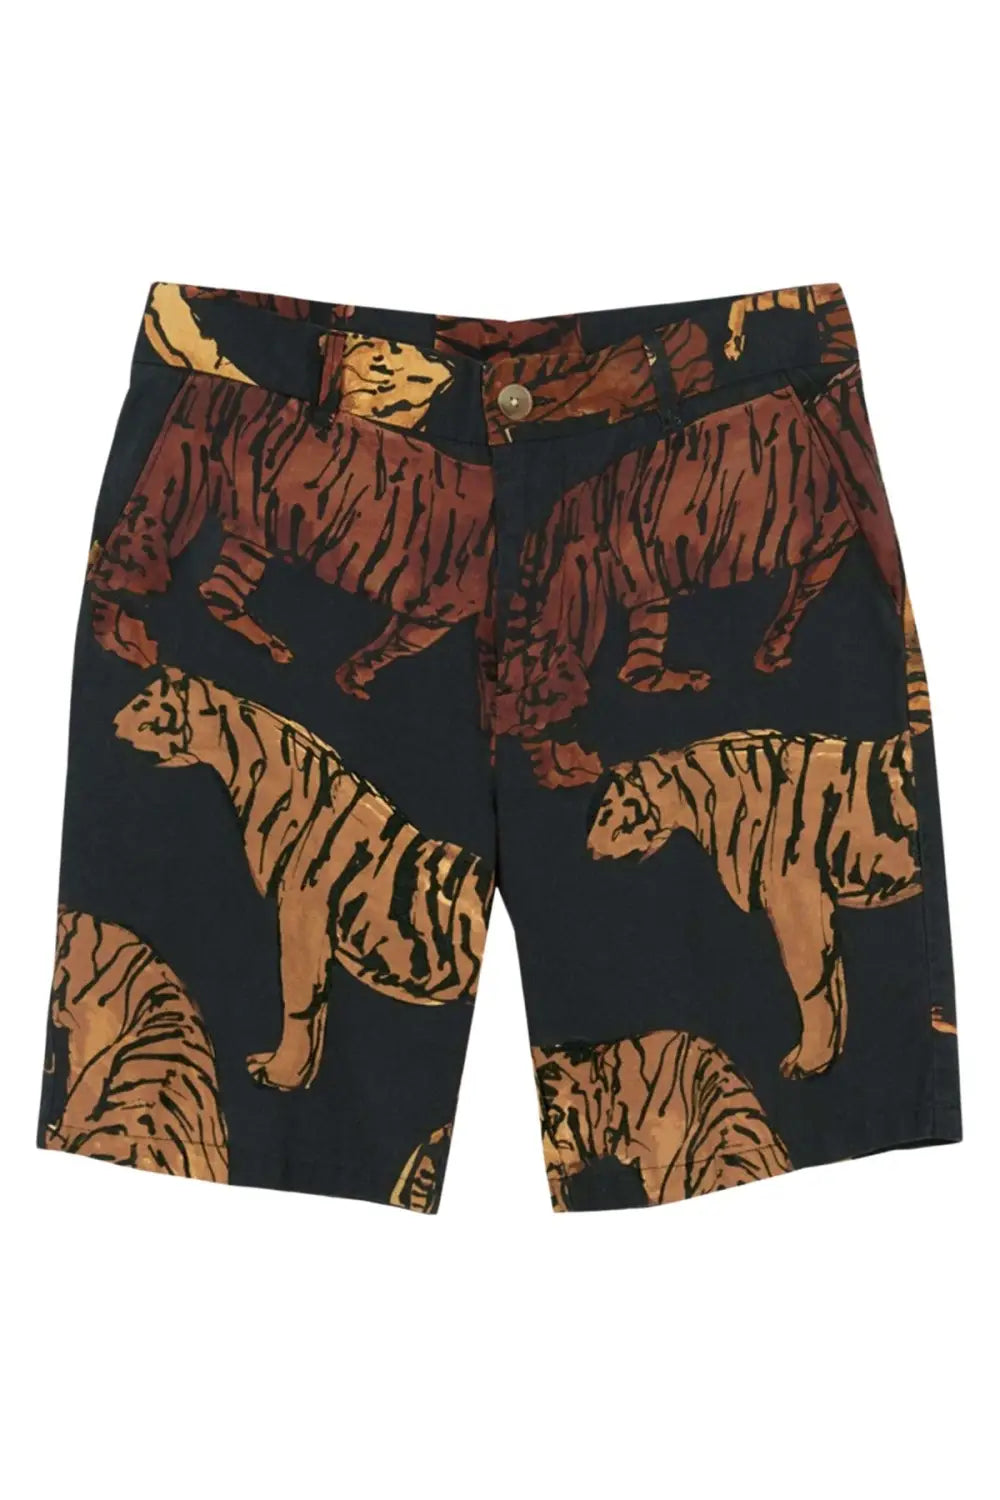 Warehouse Tiger Print Shorts